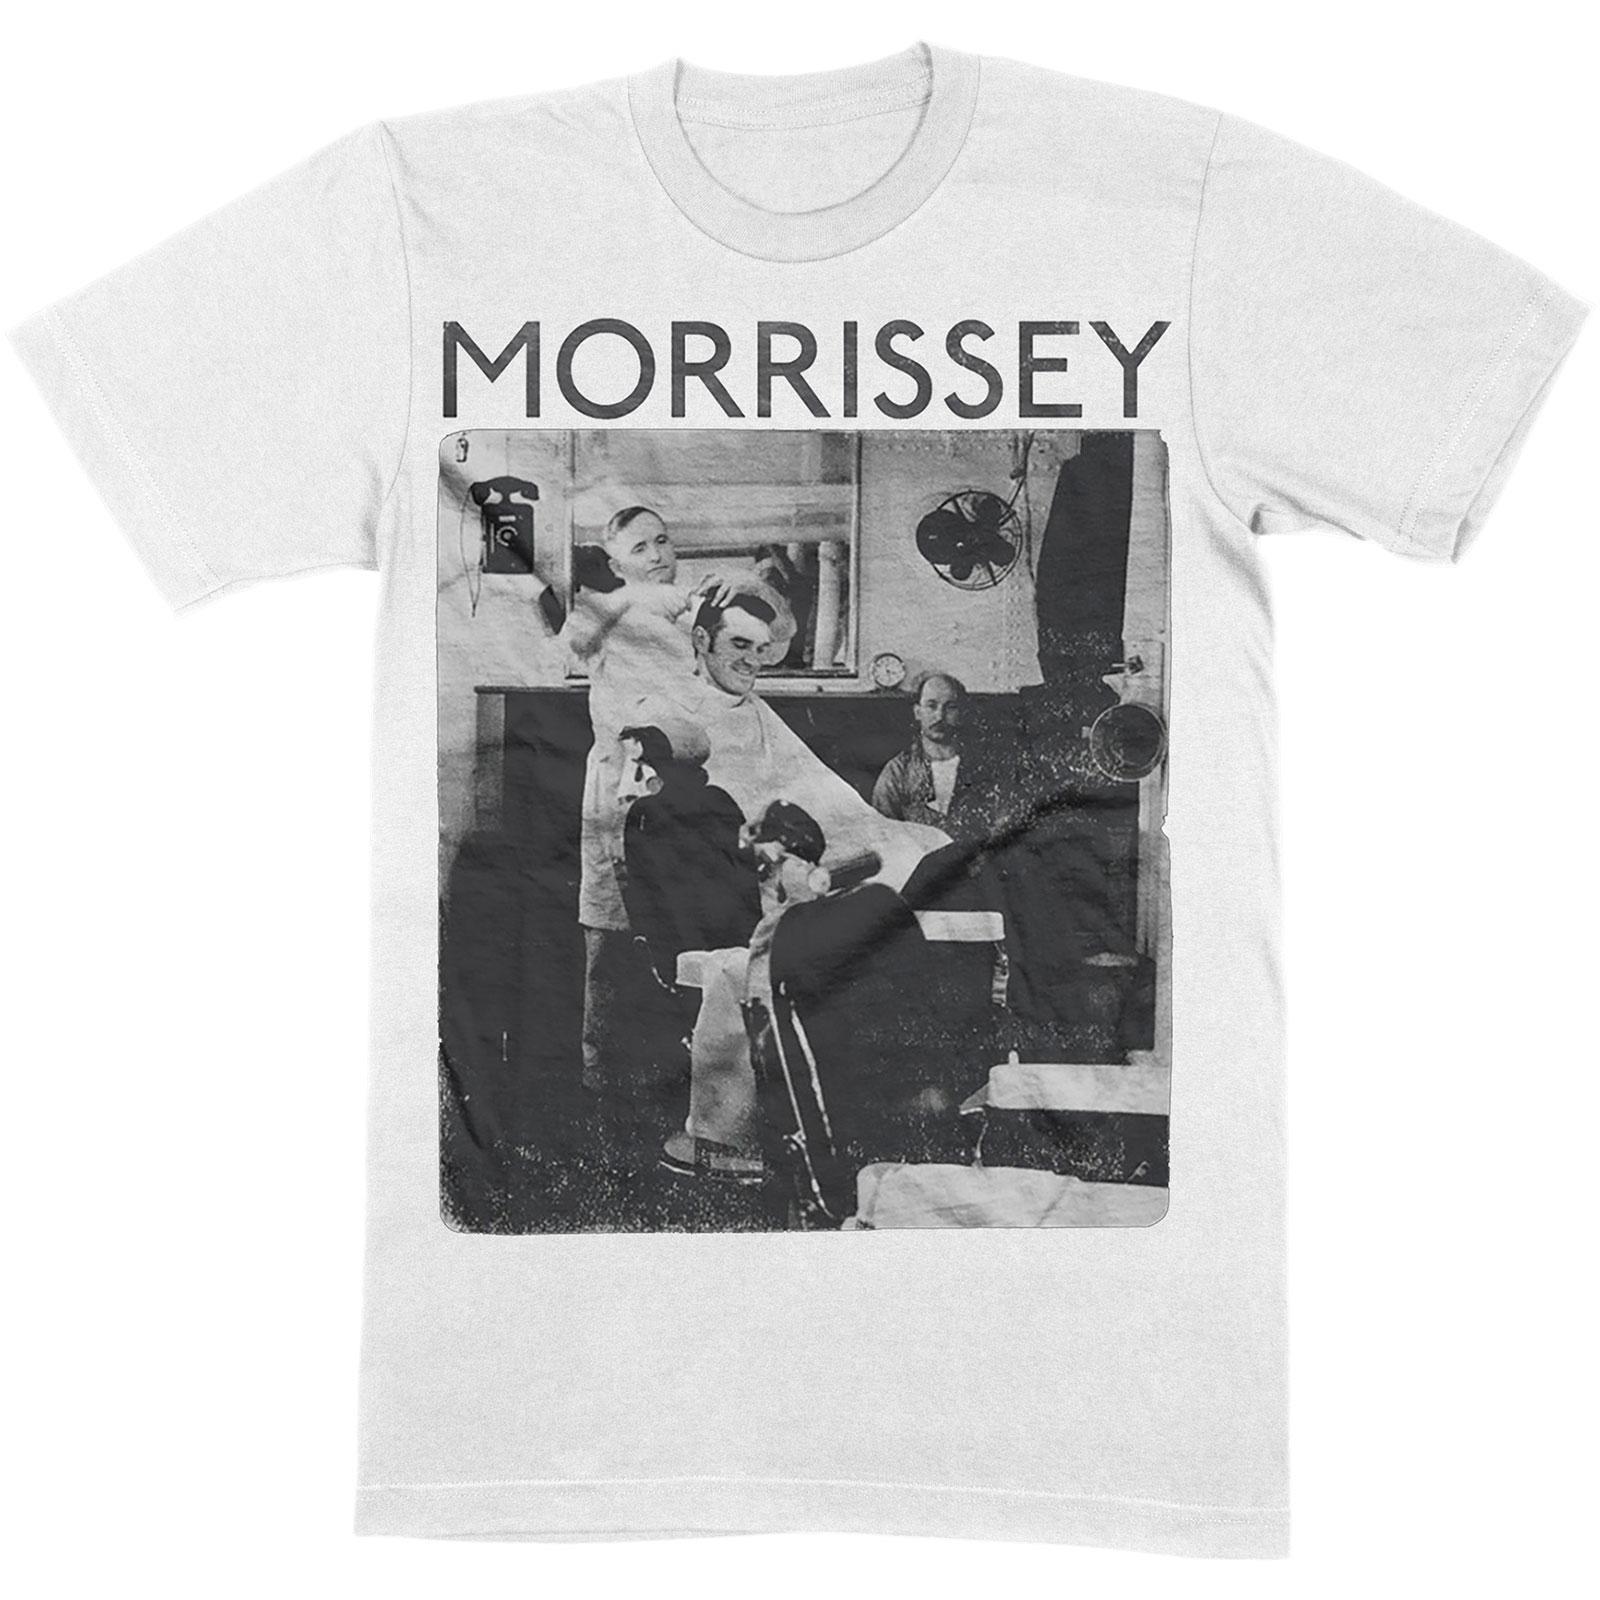 Morrissey Unisex Adult Barber Shop Cotton T-Shirt (White) (M)